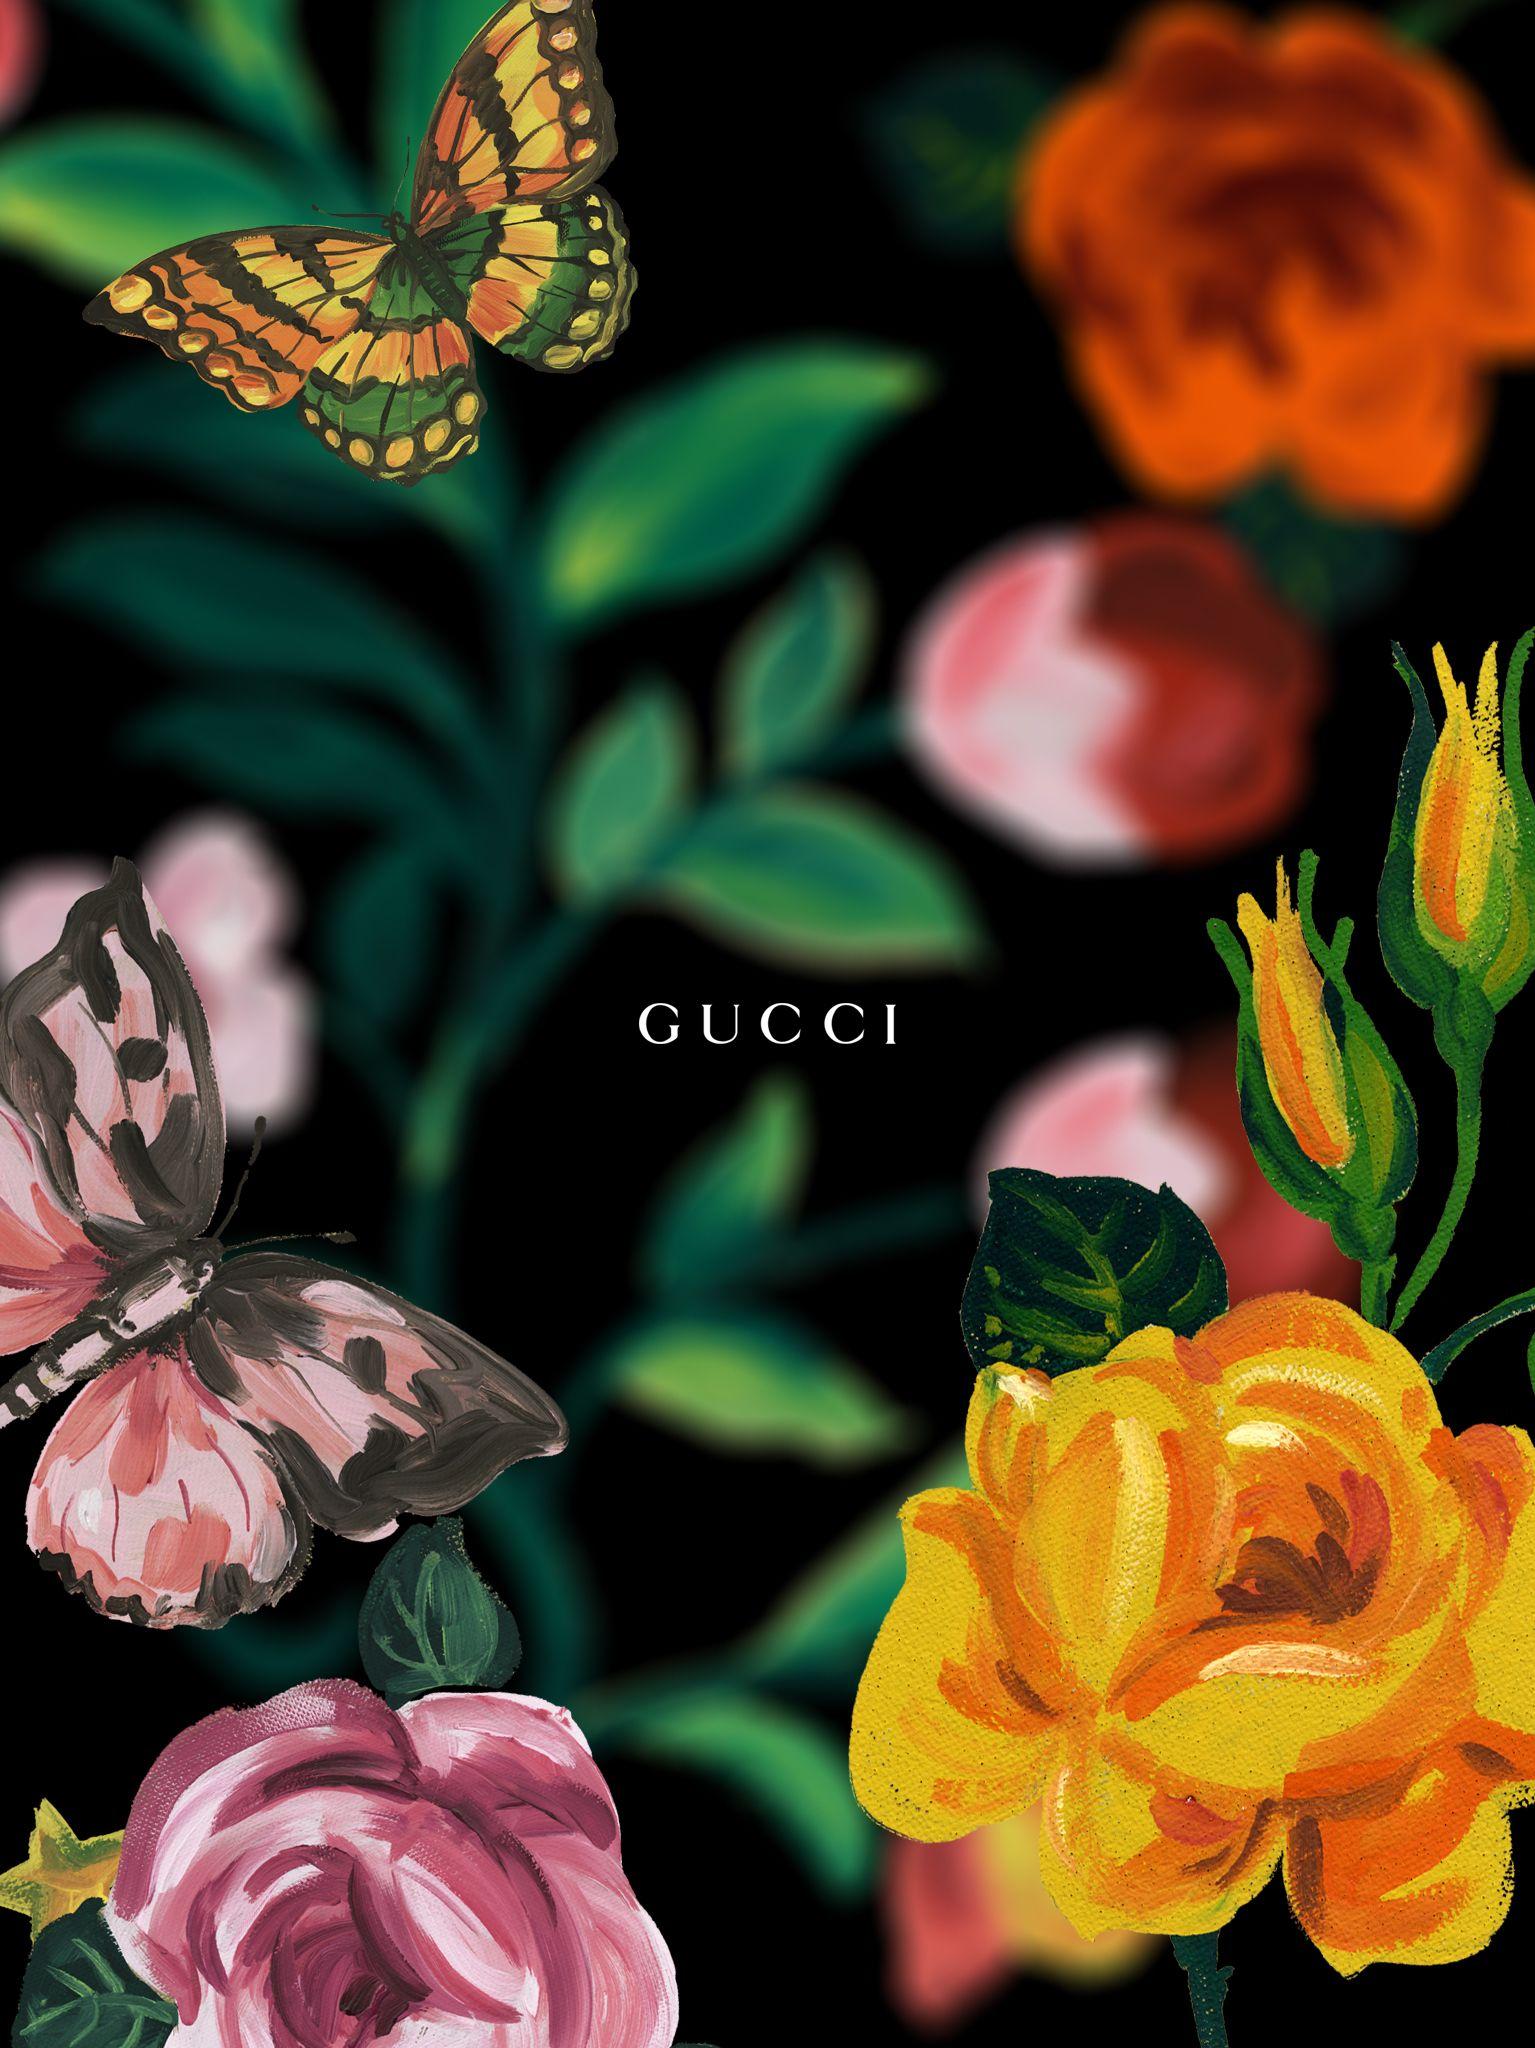 Gucci Hd Wallpapers - Wallpaper Cave